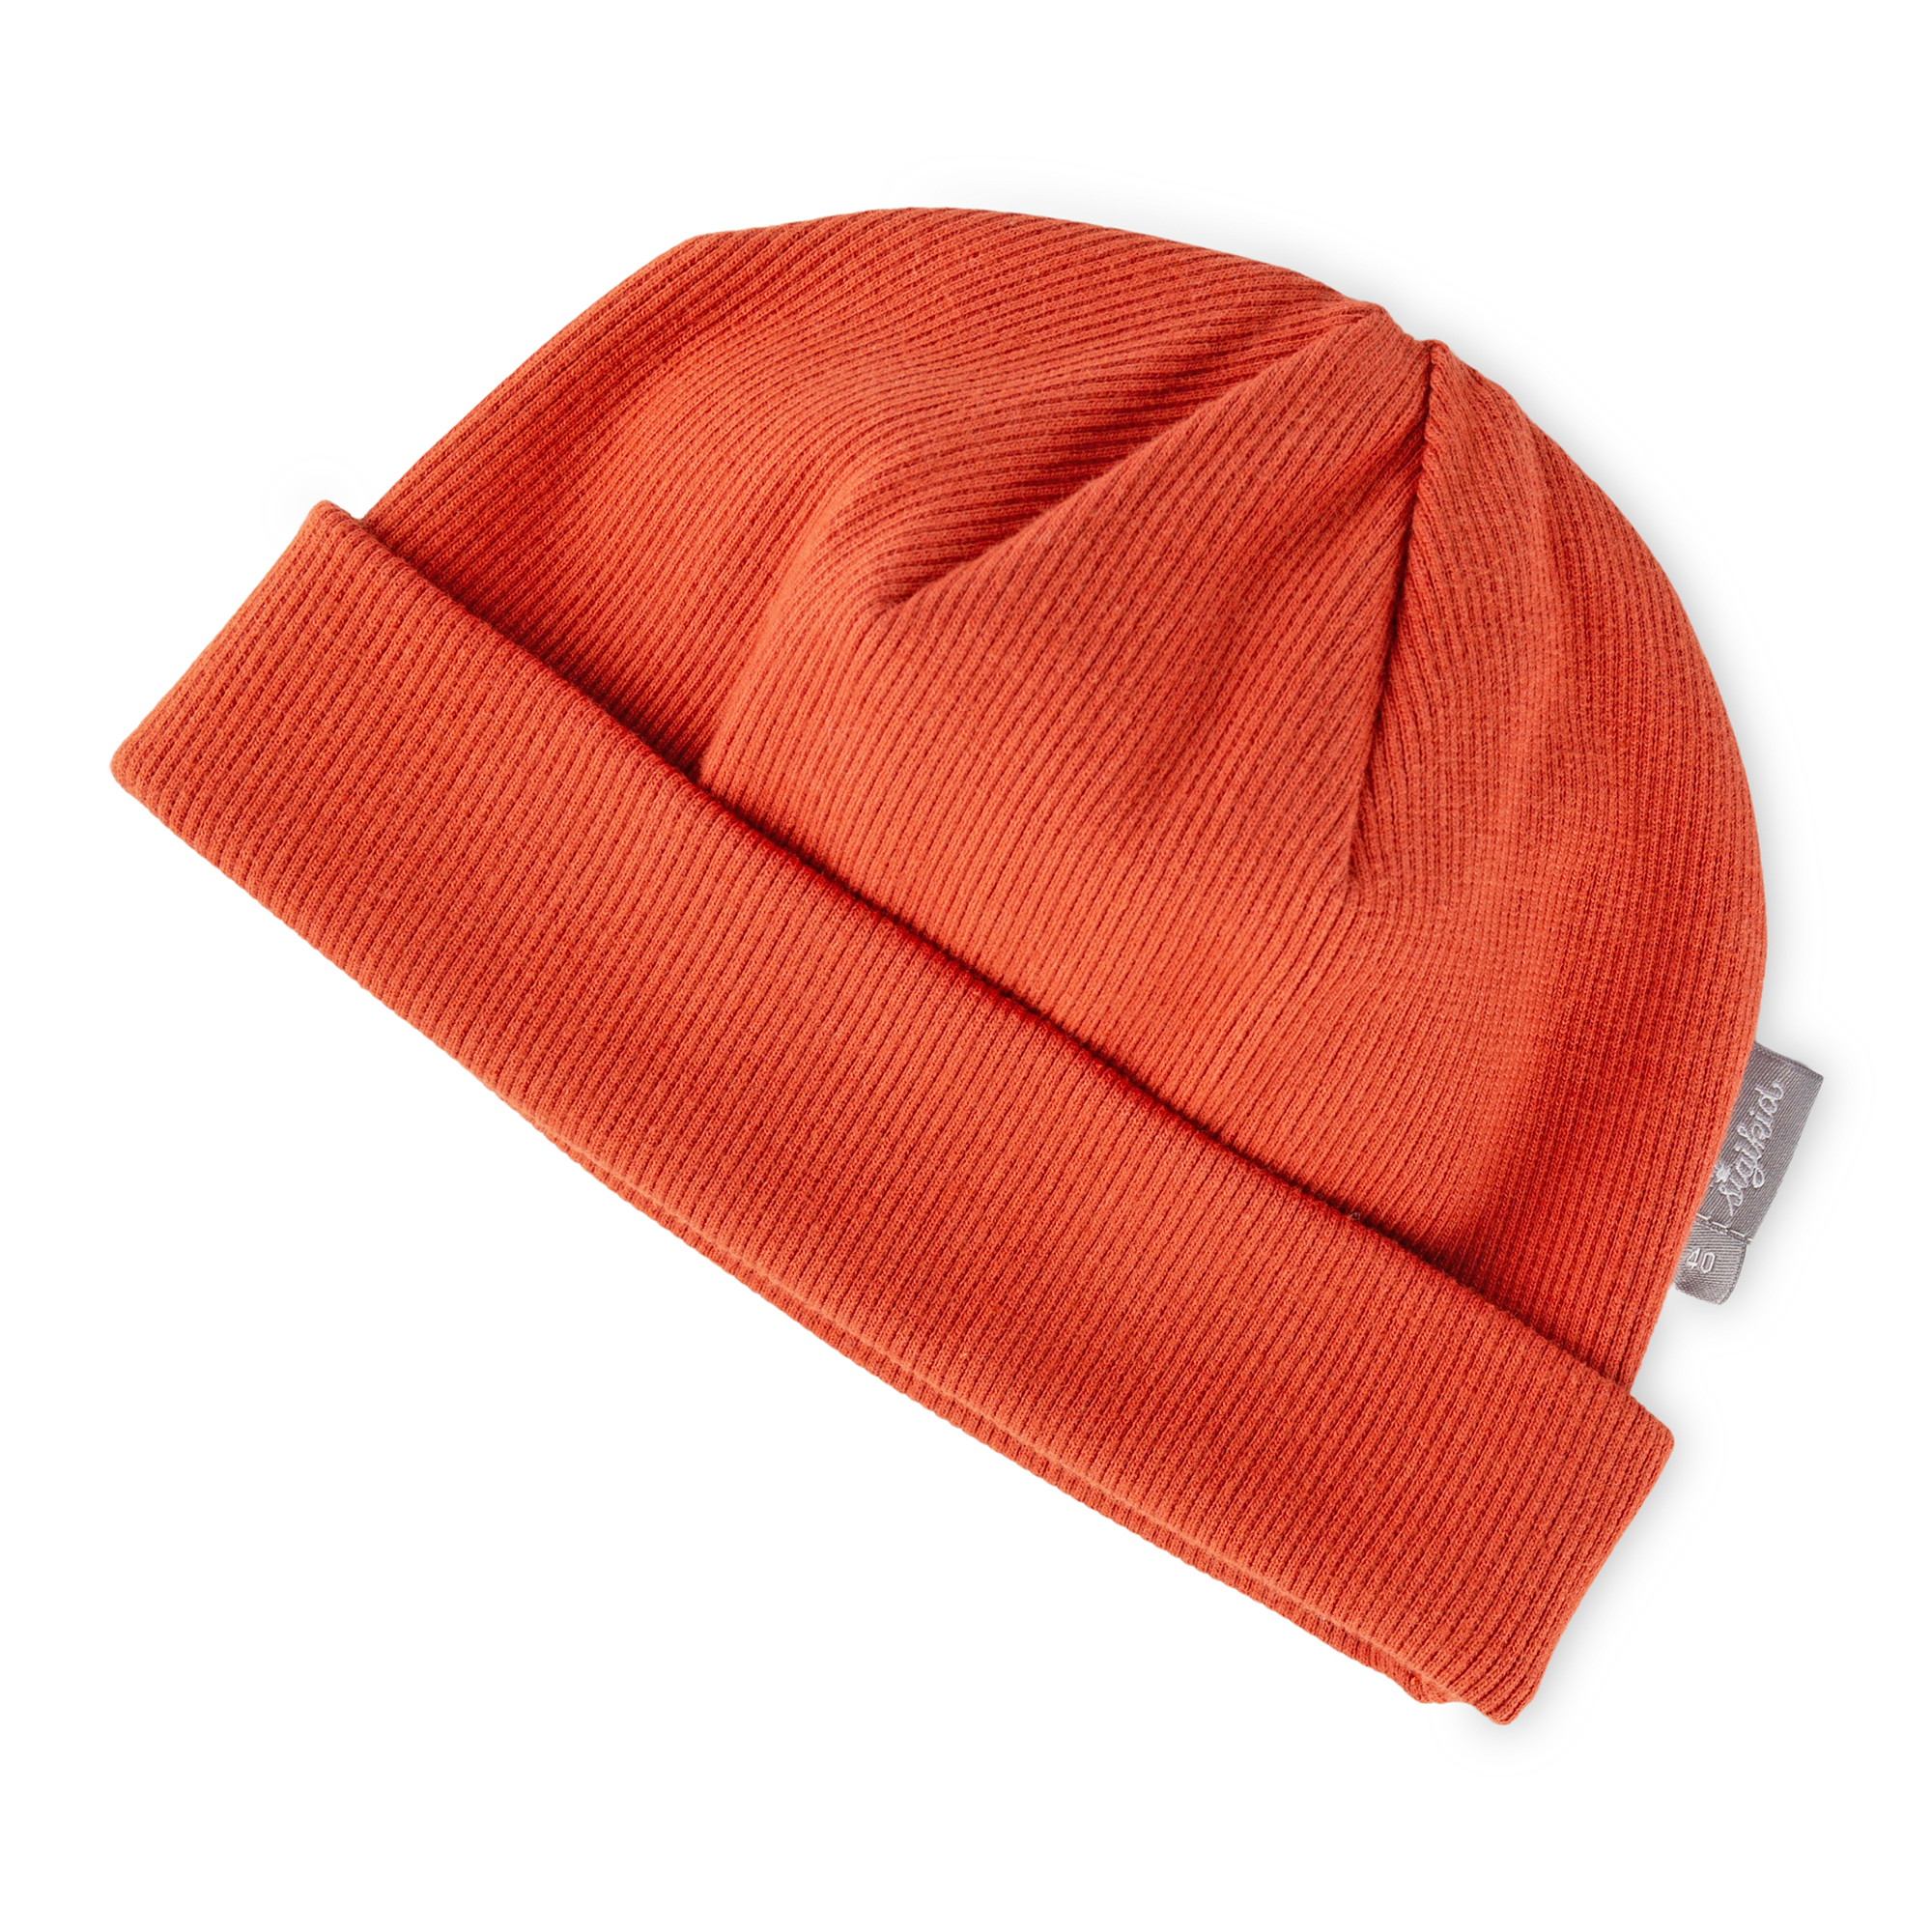 Snug baby rib knit beanie hat, orange